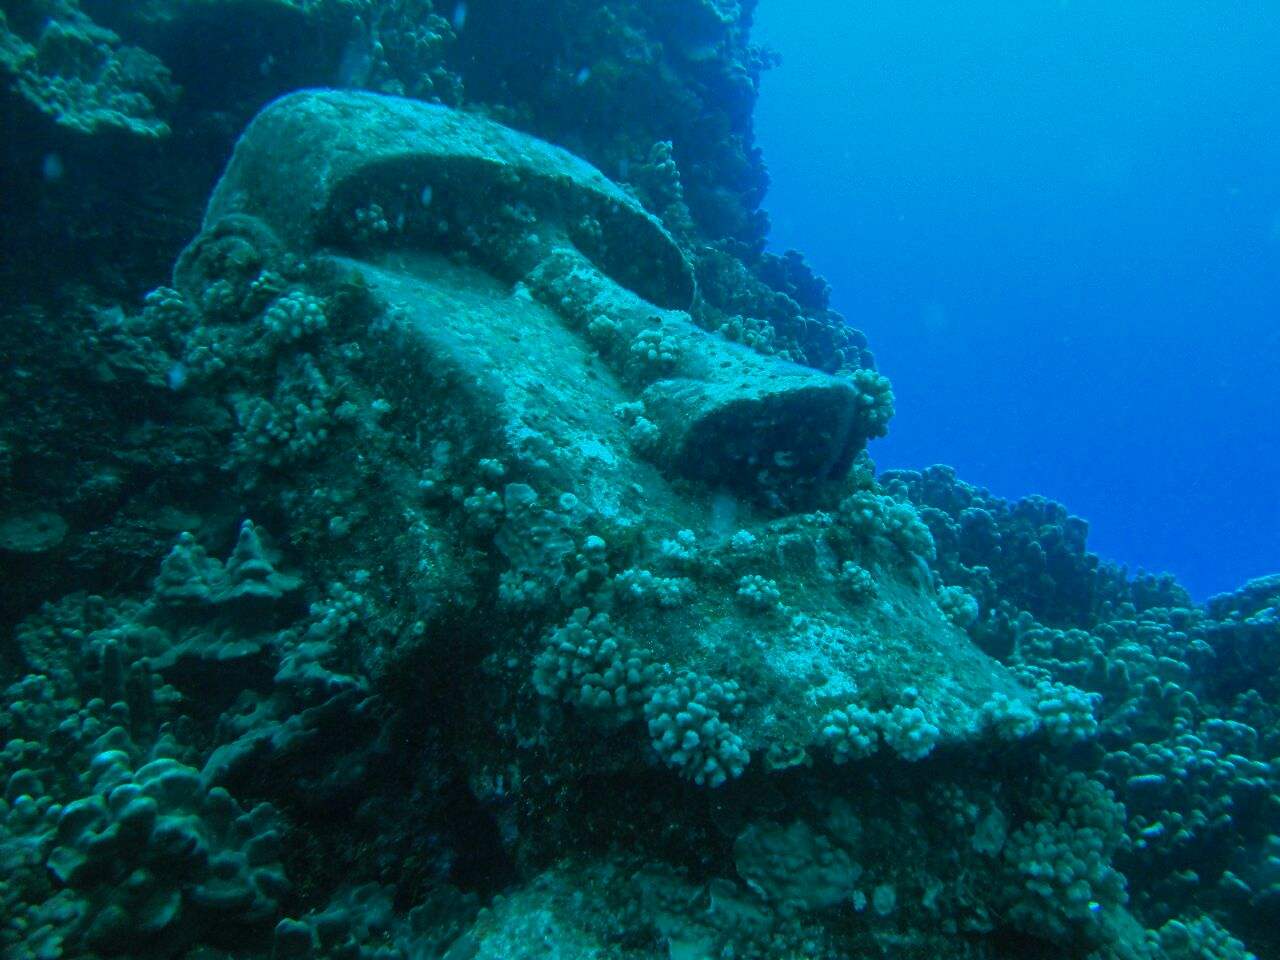 世界各地"海底遗迹"的发现,证明人类文明或不止我们这一代!